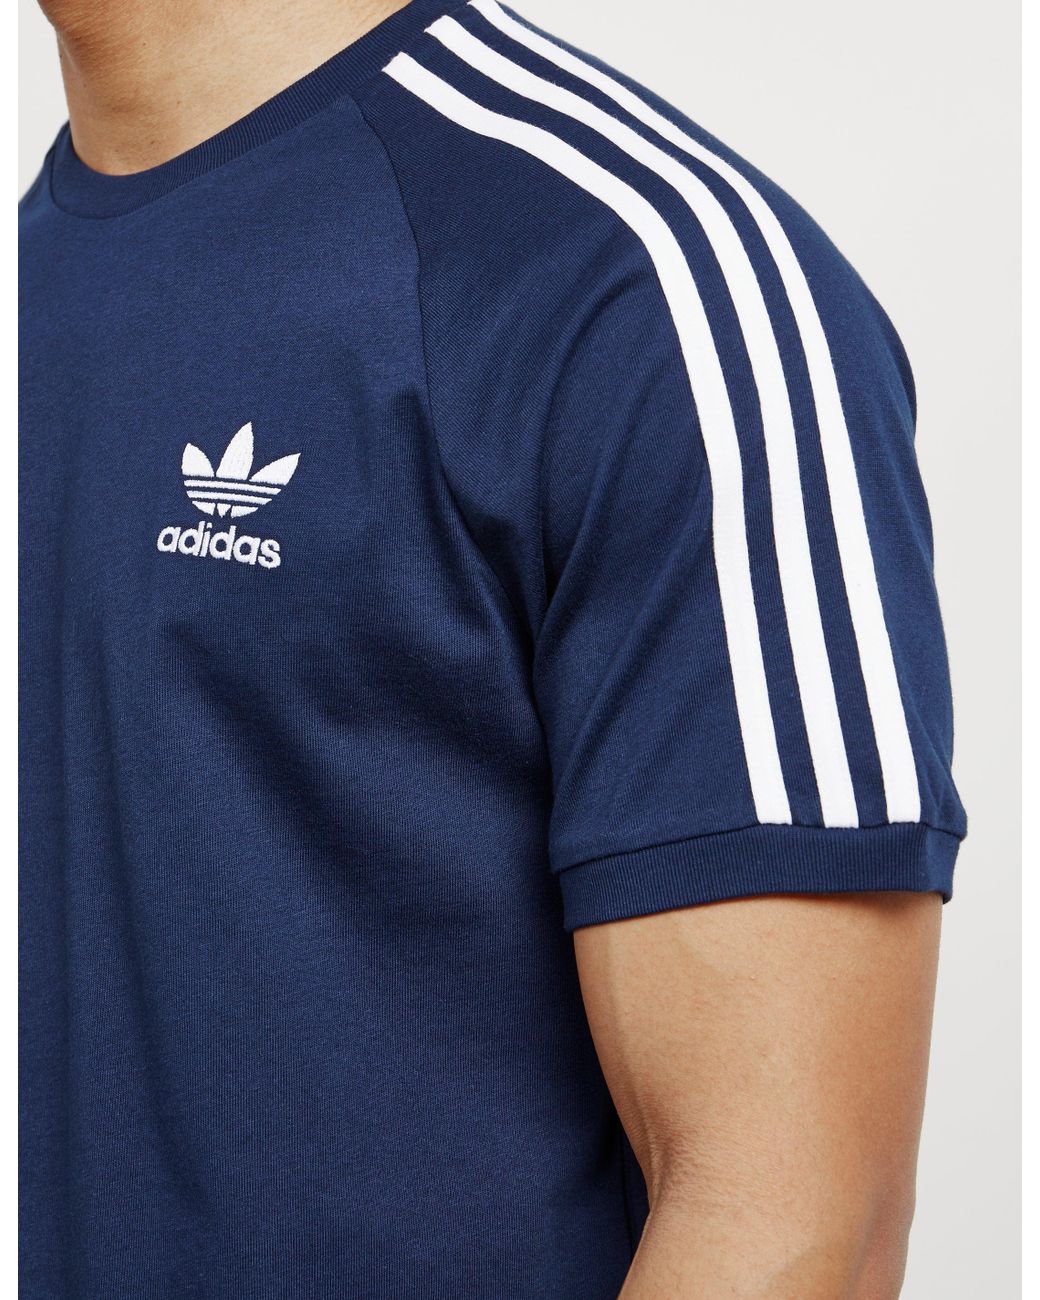 adidas Originals California Raglan Sleeve T-shirt Navy Blue for Men | Lyst